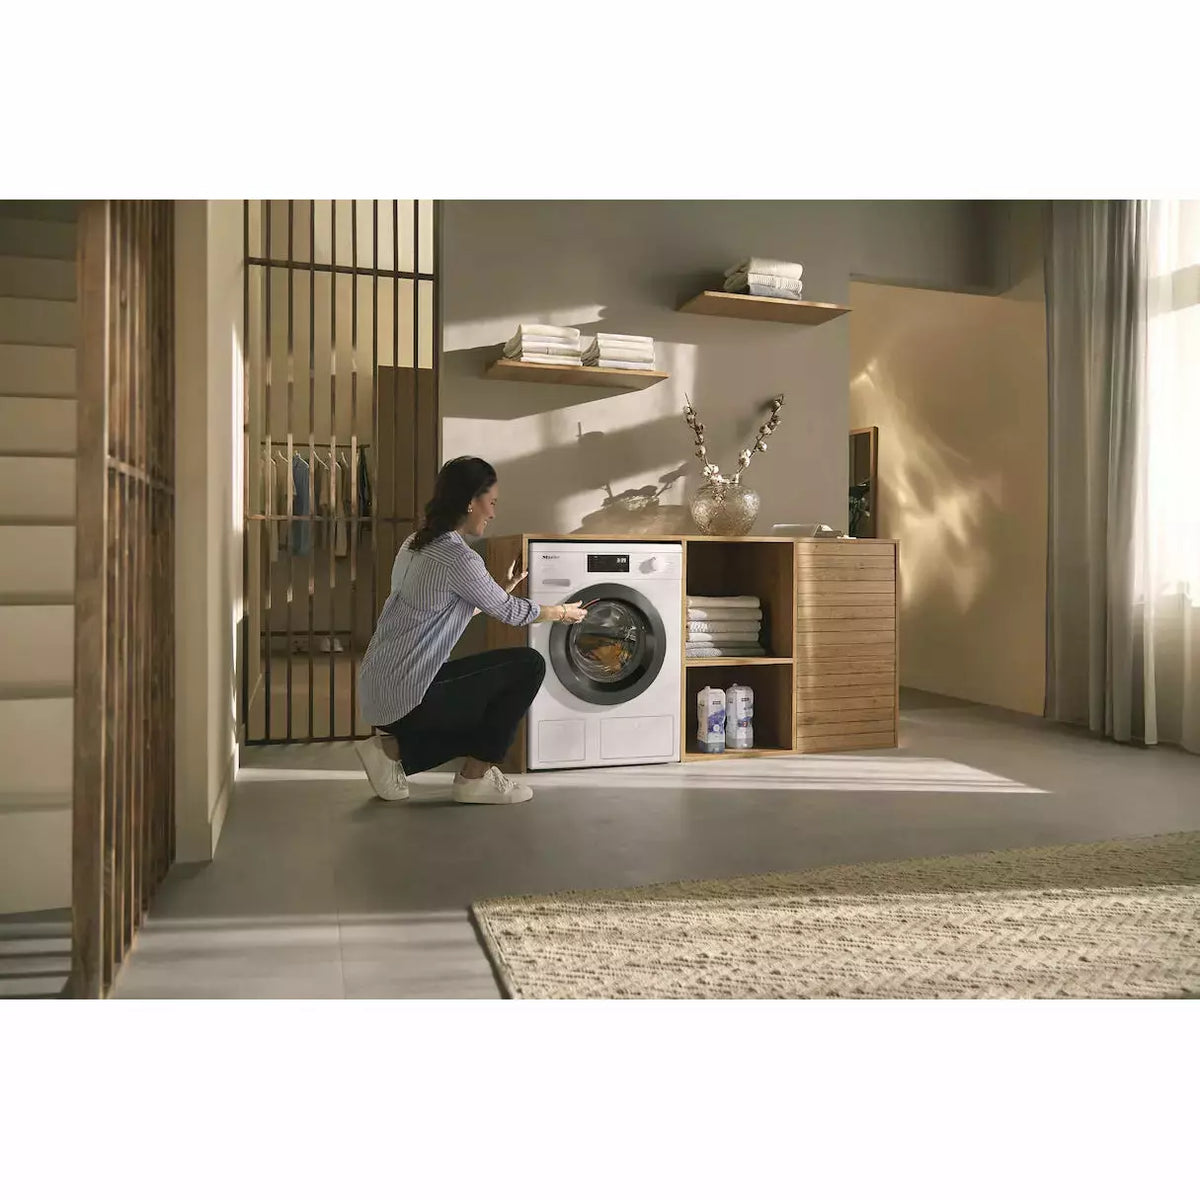 Miele 8KG 1400 Spin Freestanding Washing Machine - Lotus White | WED 665 (7567990194364)